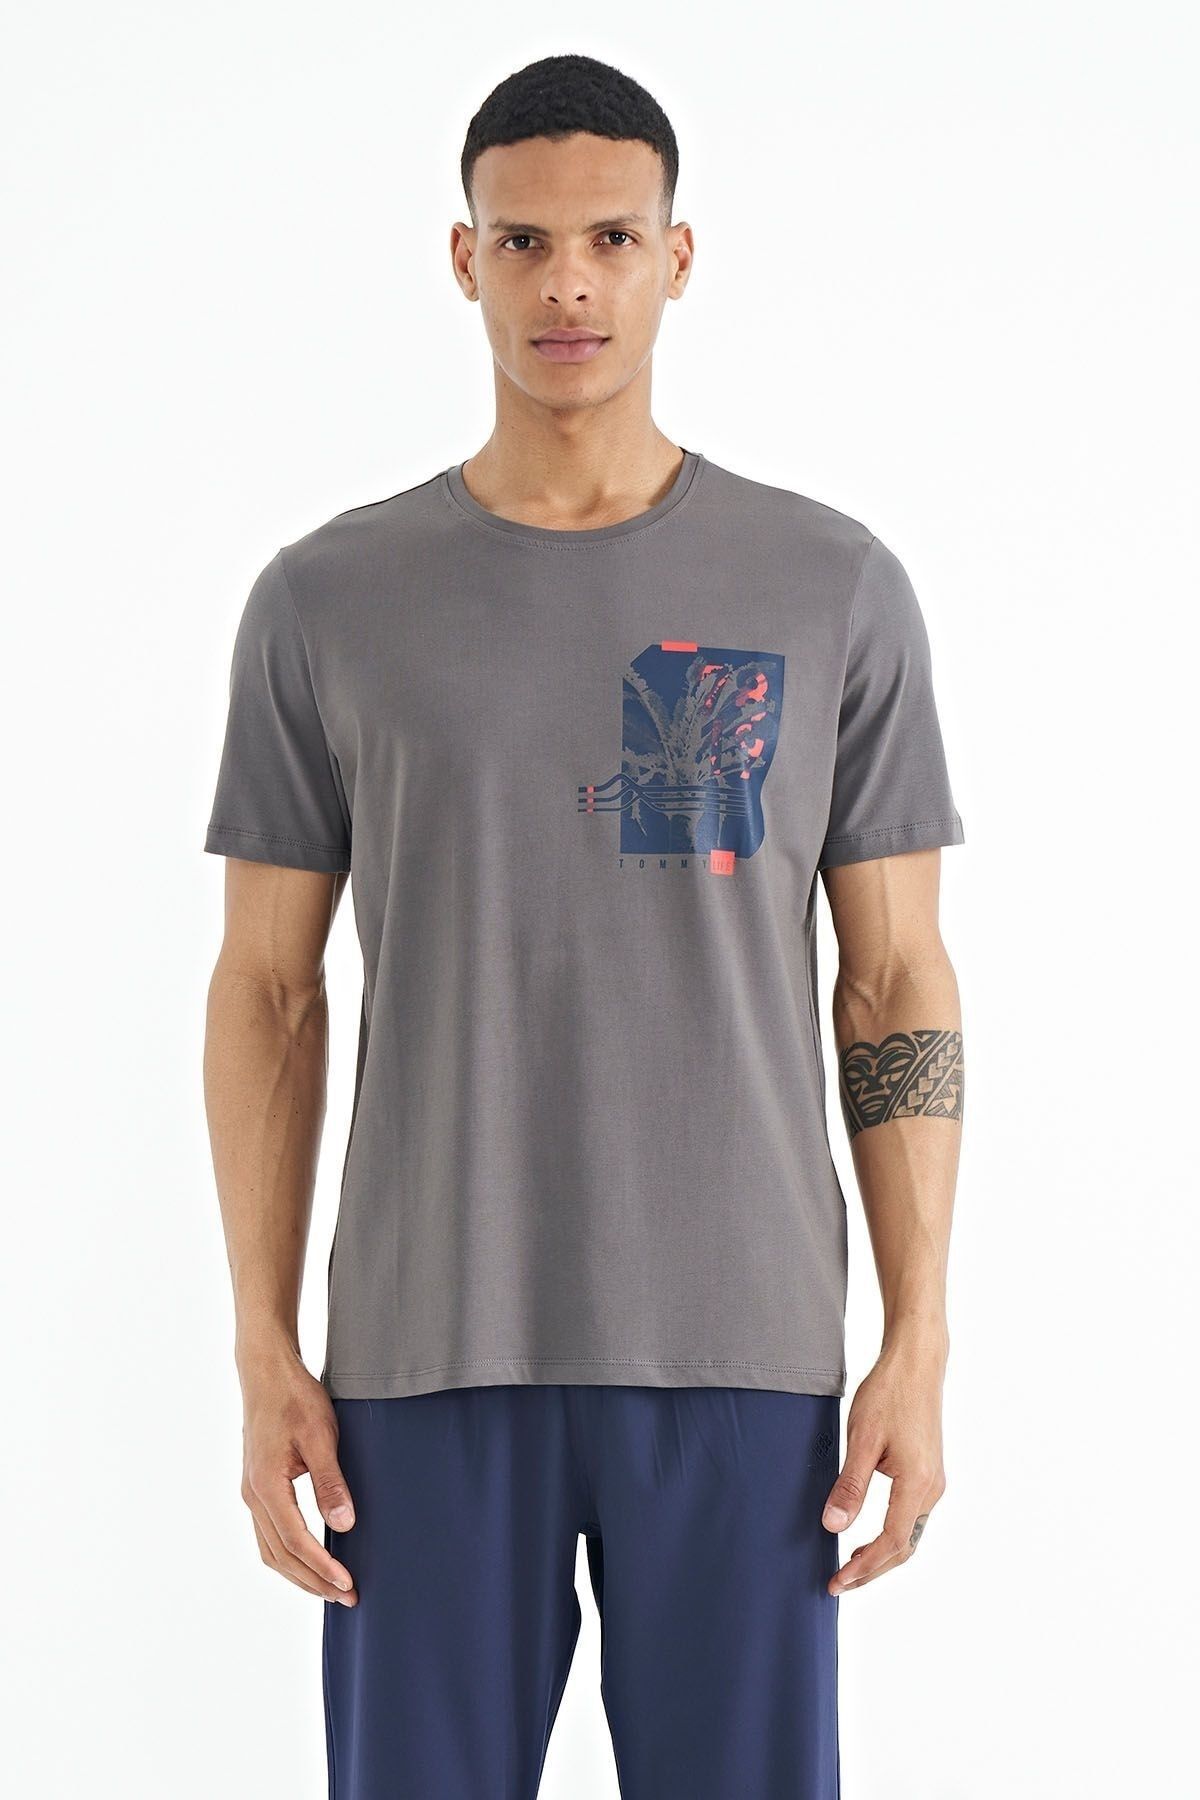 TOMMY LIFE Koyu Gri Ön Arka Baskı Detaylı Standart Form Erkek T-shirt - 88233